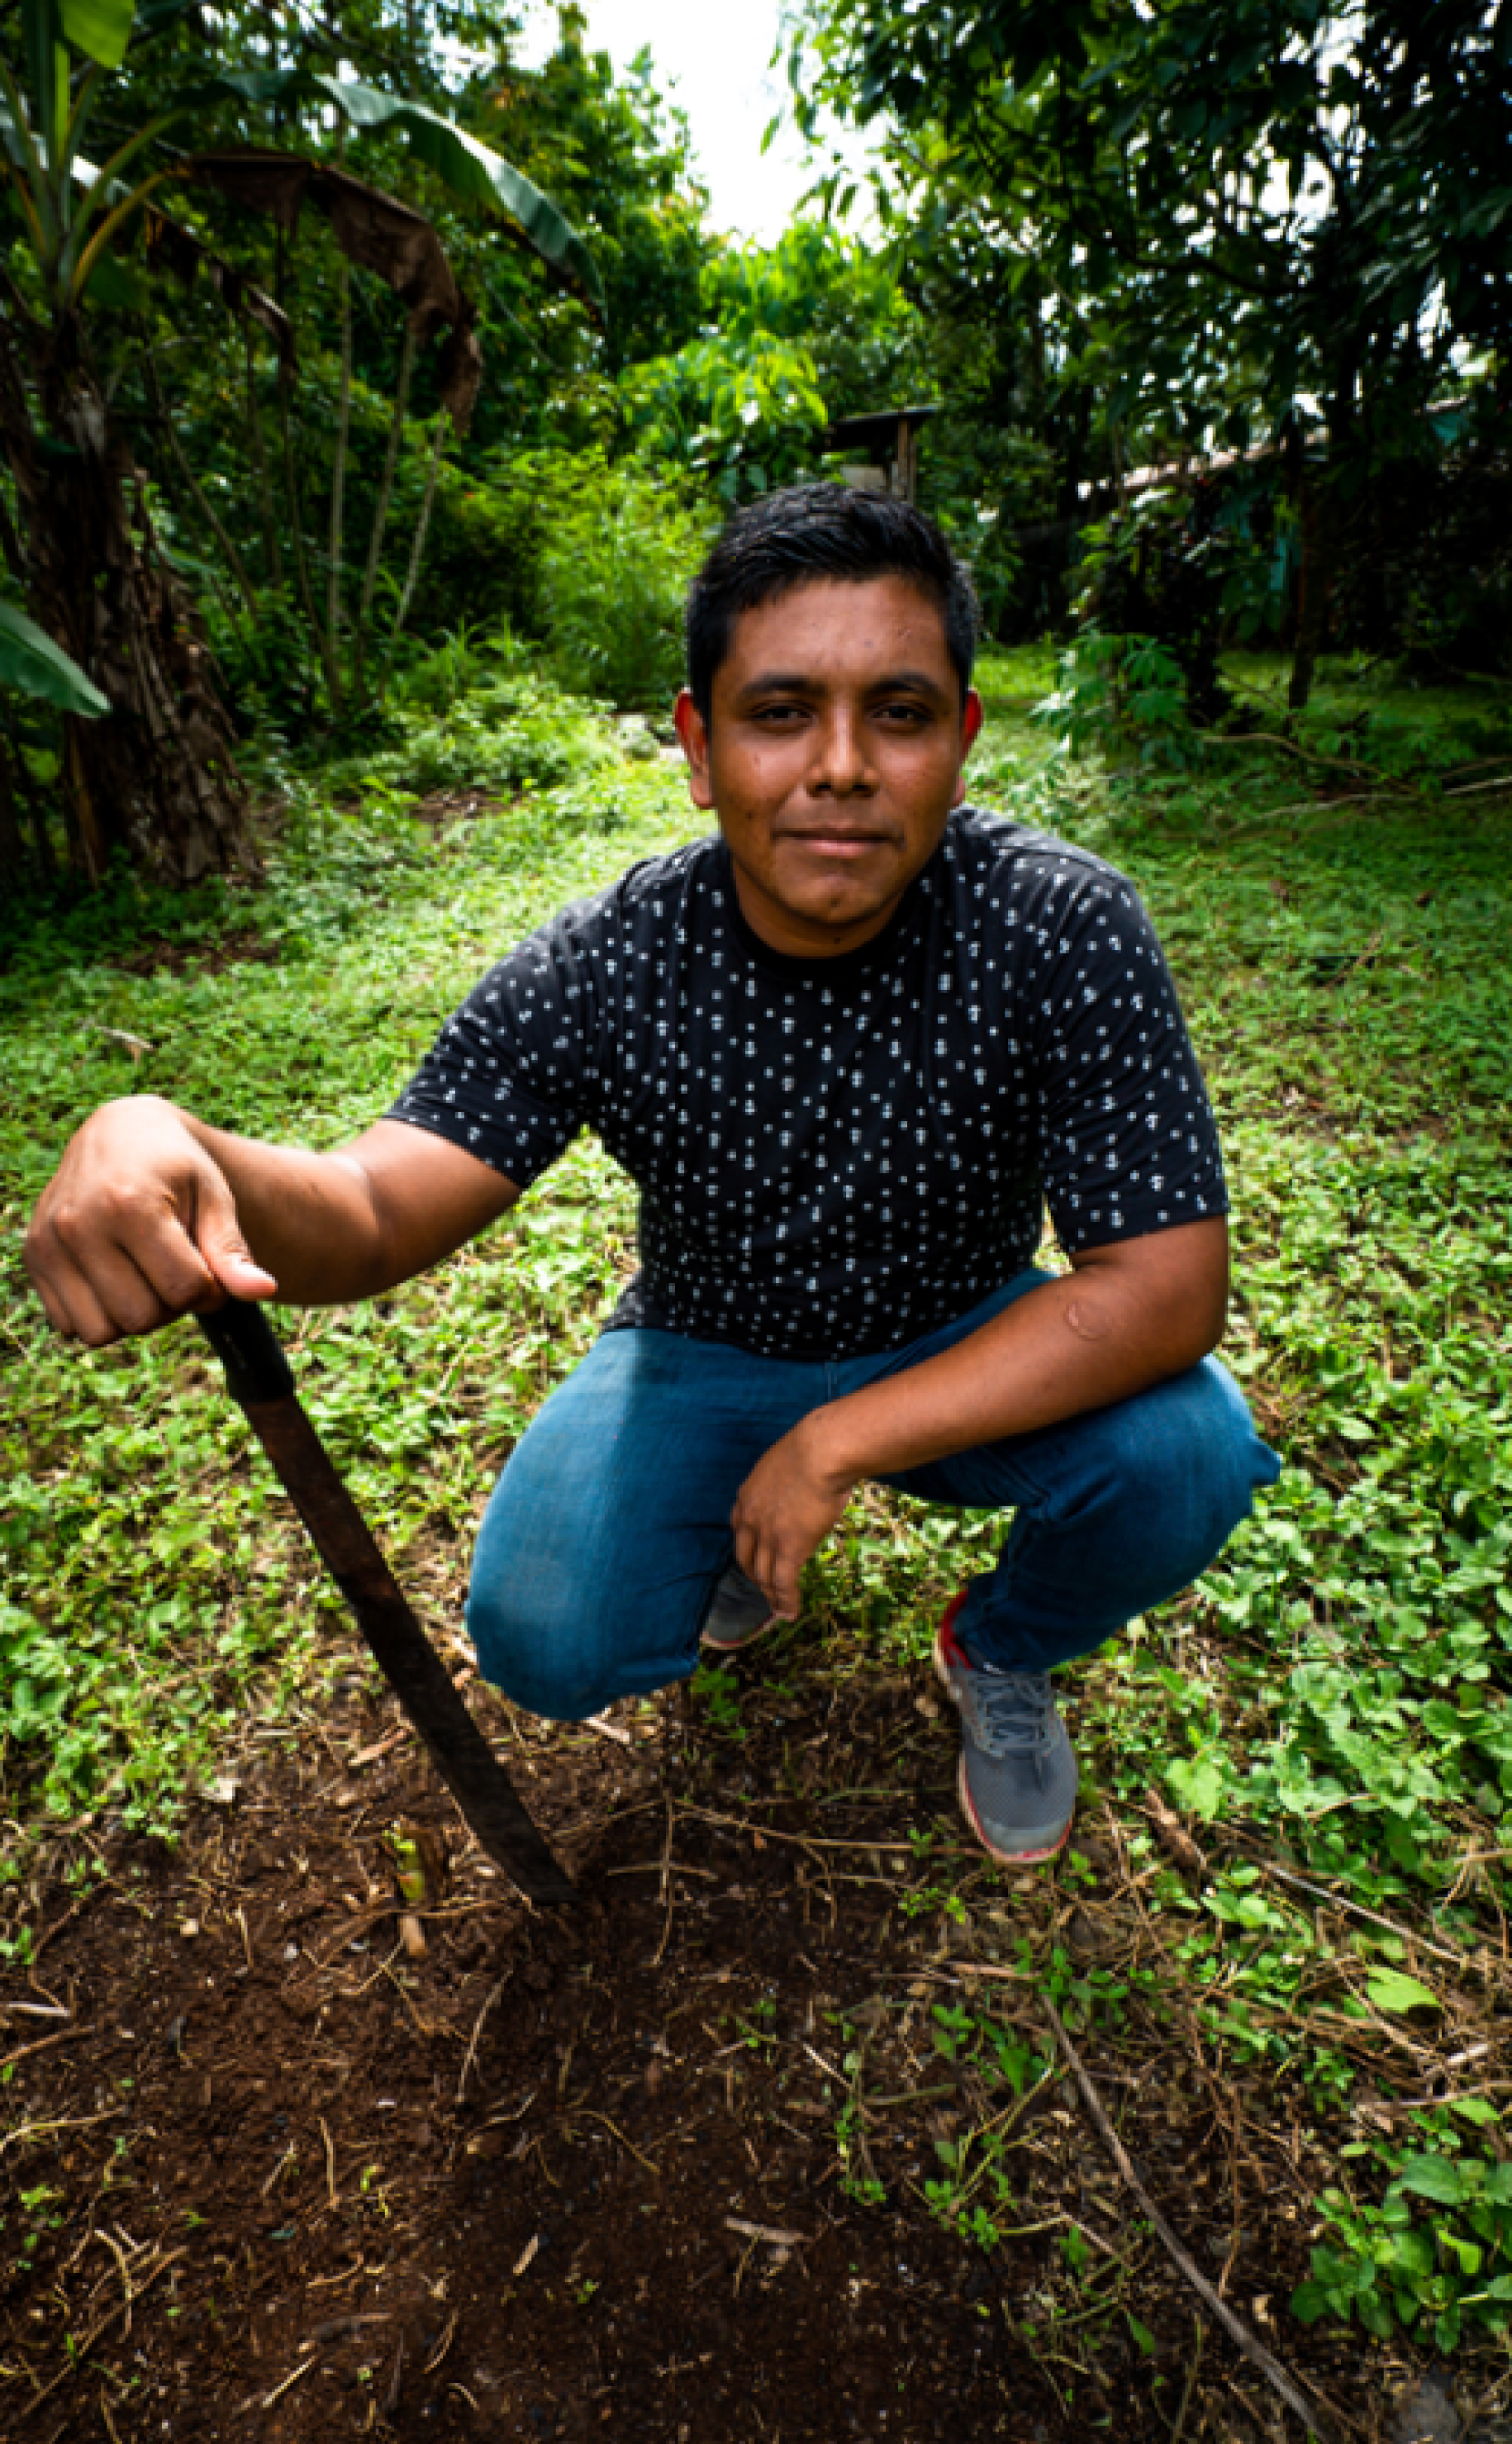 Un joven se agacha cerca de una pala en un terreno verde con árboles.